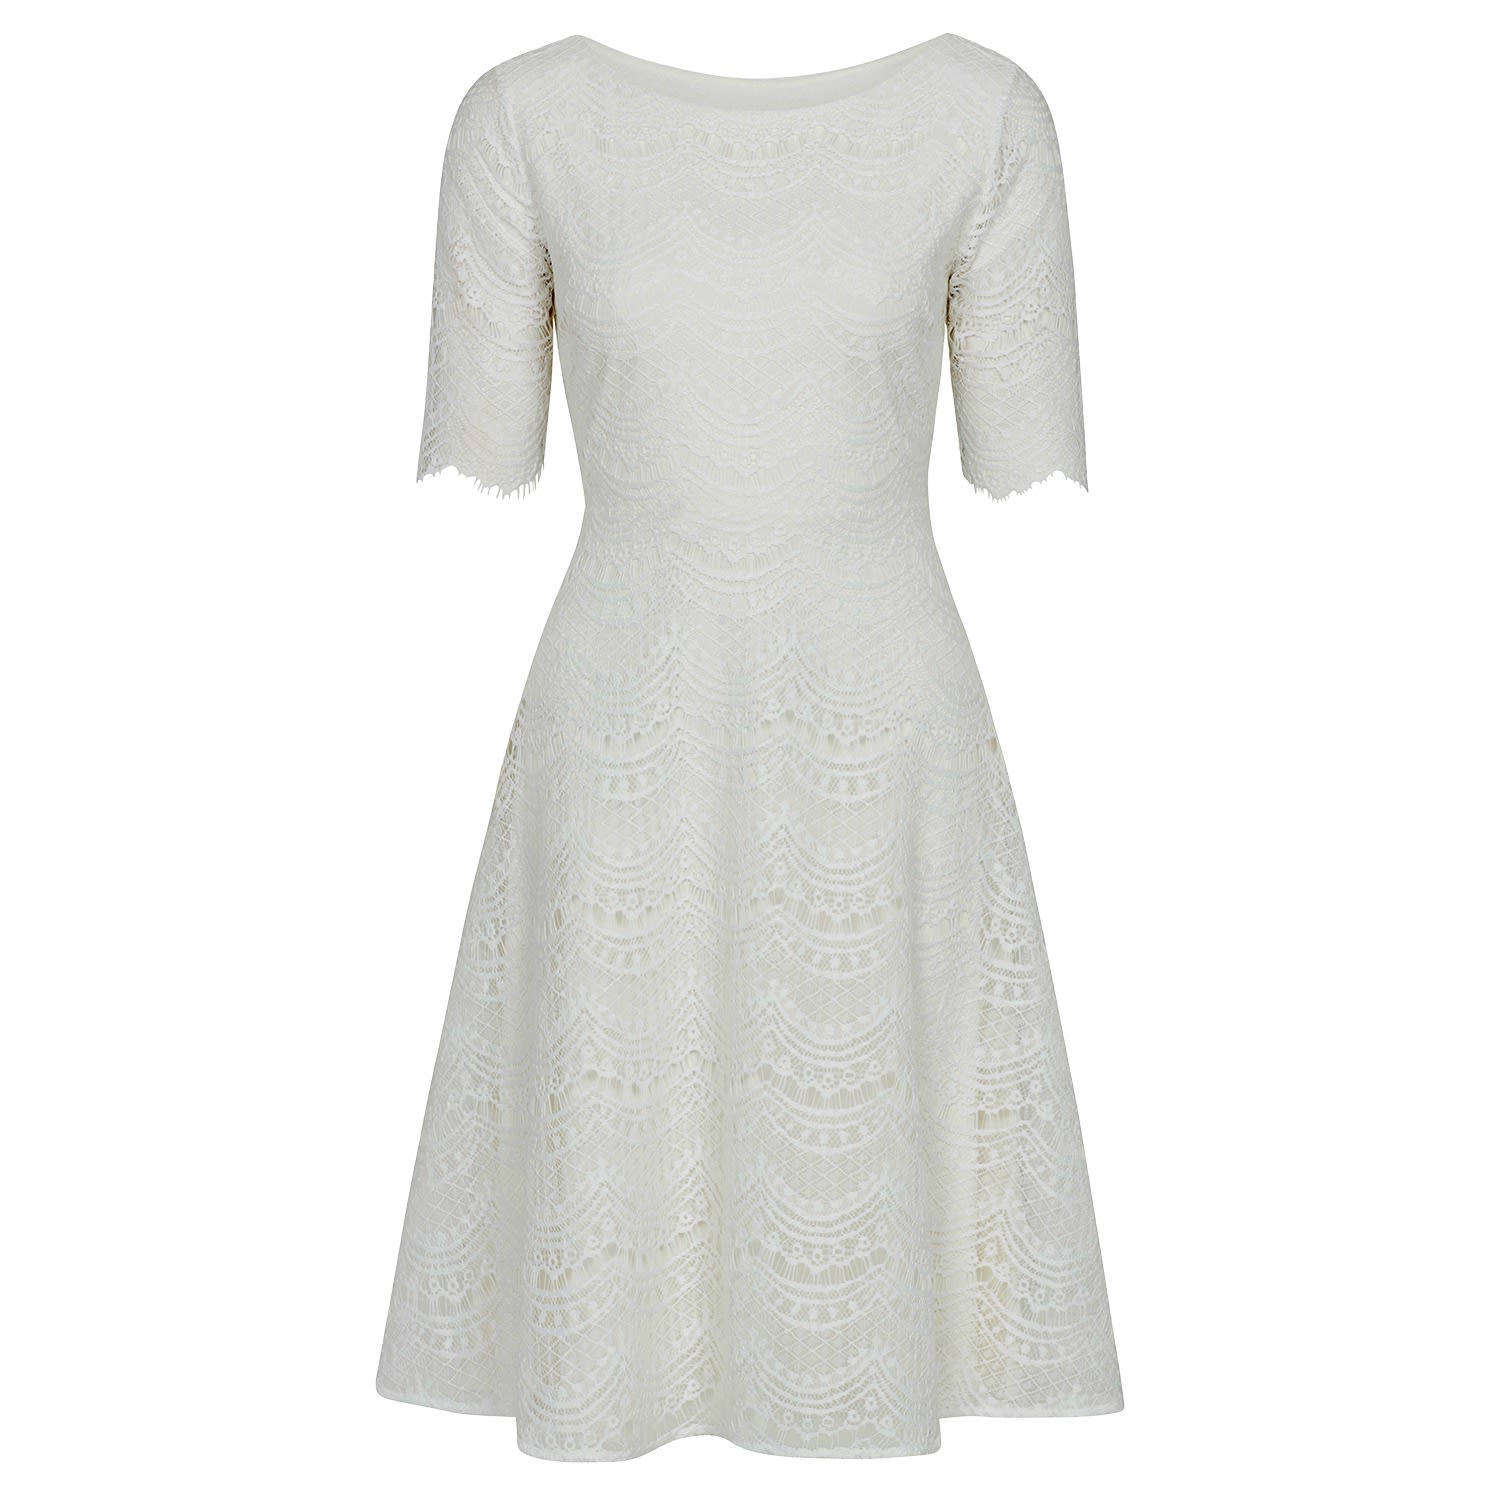 Women’s White Evie Lace Wedding Dress In Ivory Lace Xxs/Xs Alie Street London